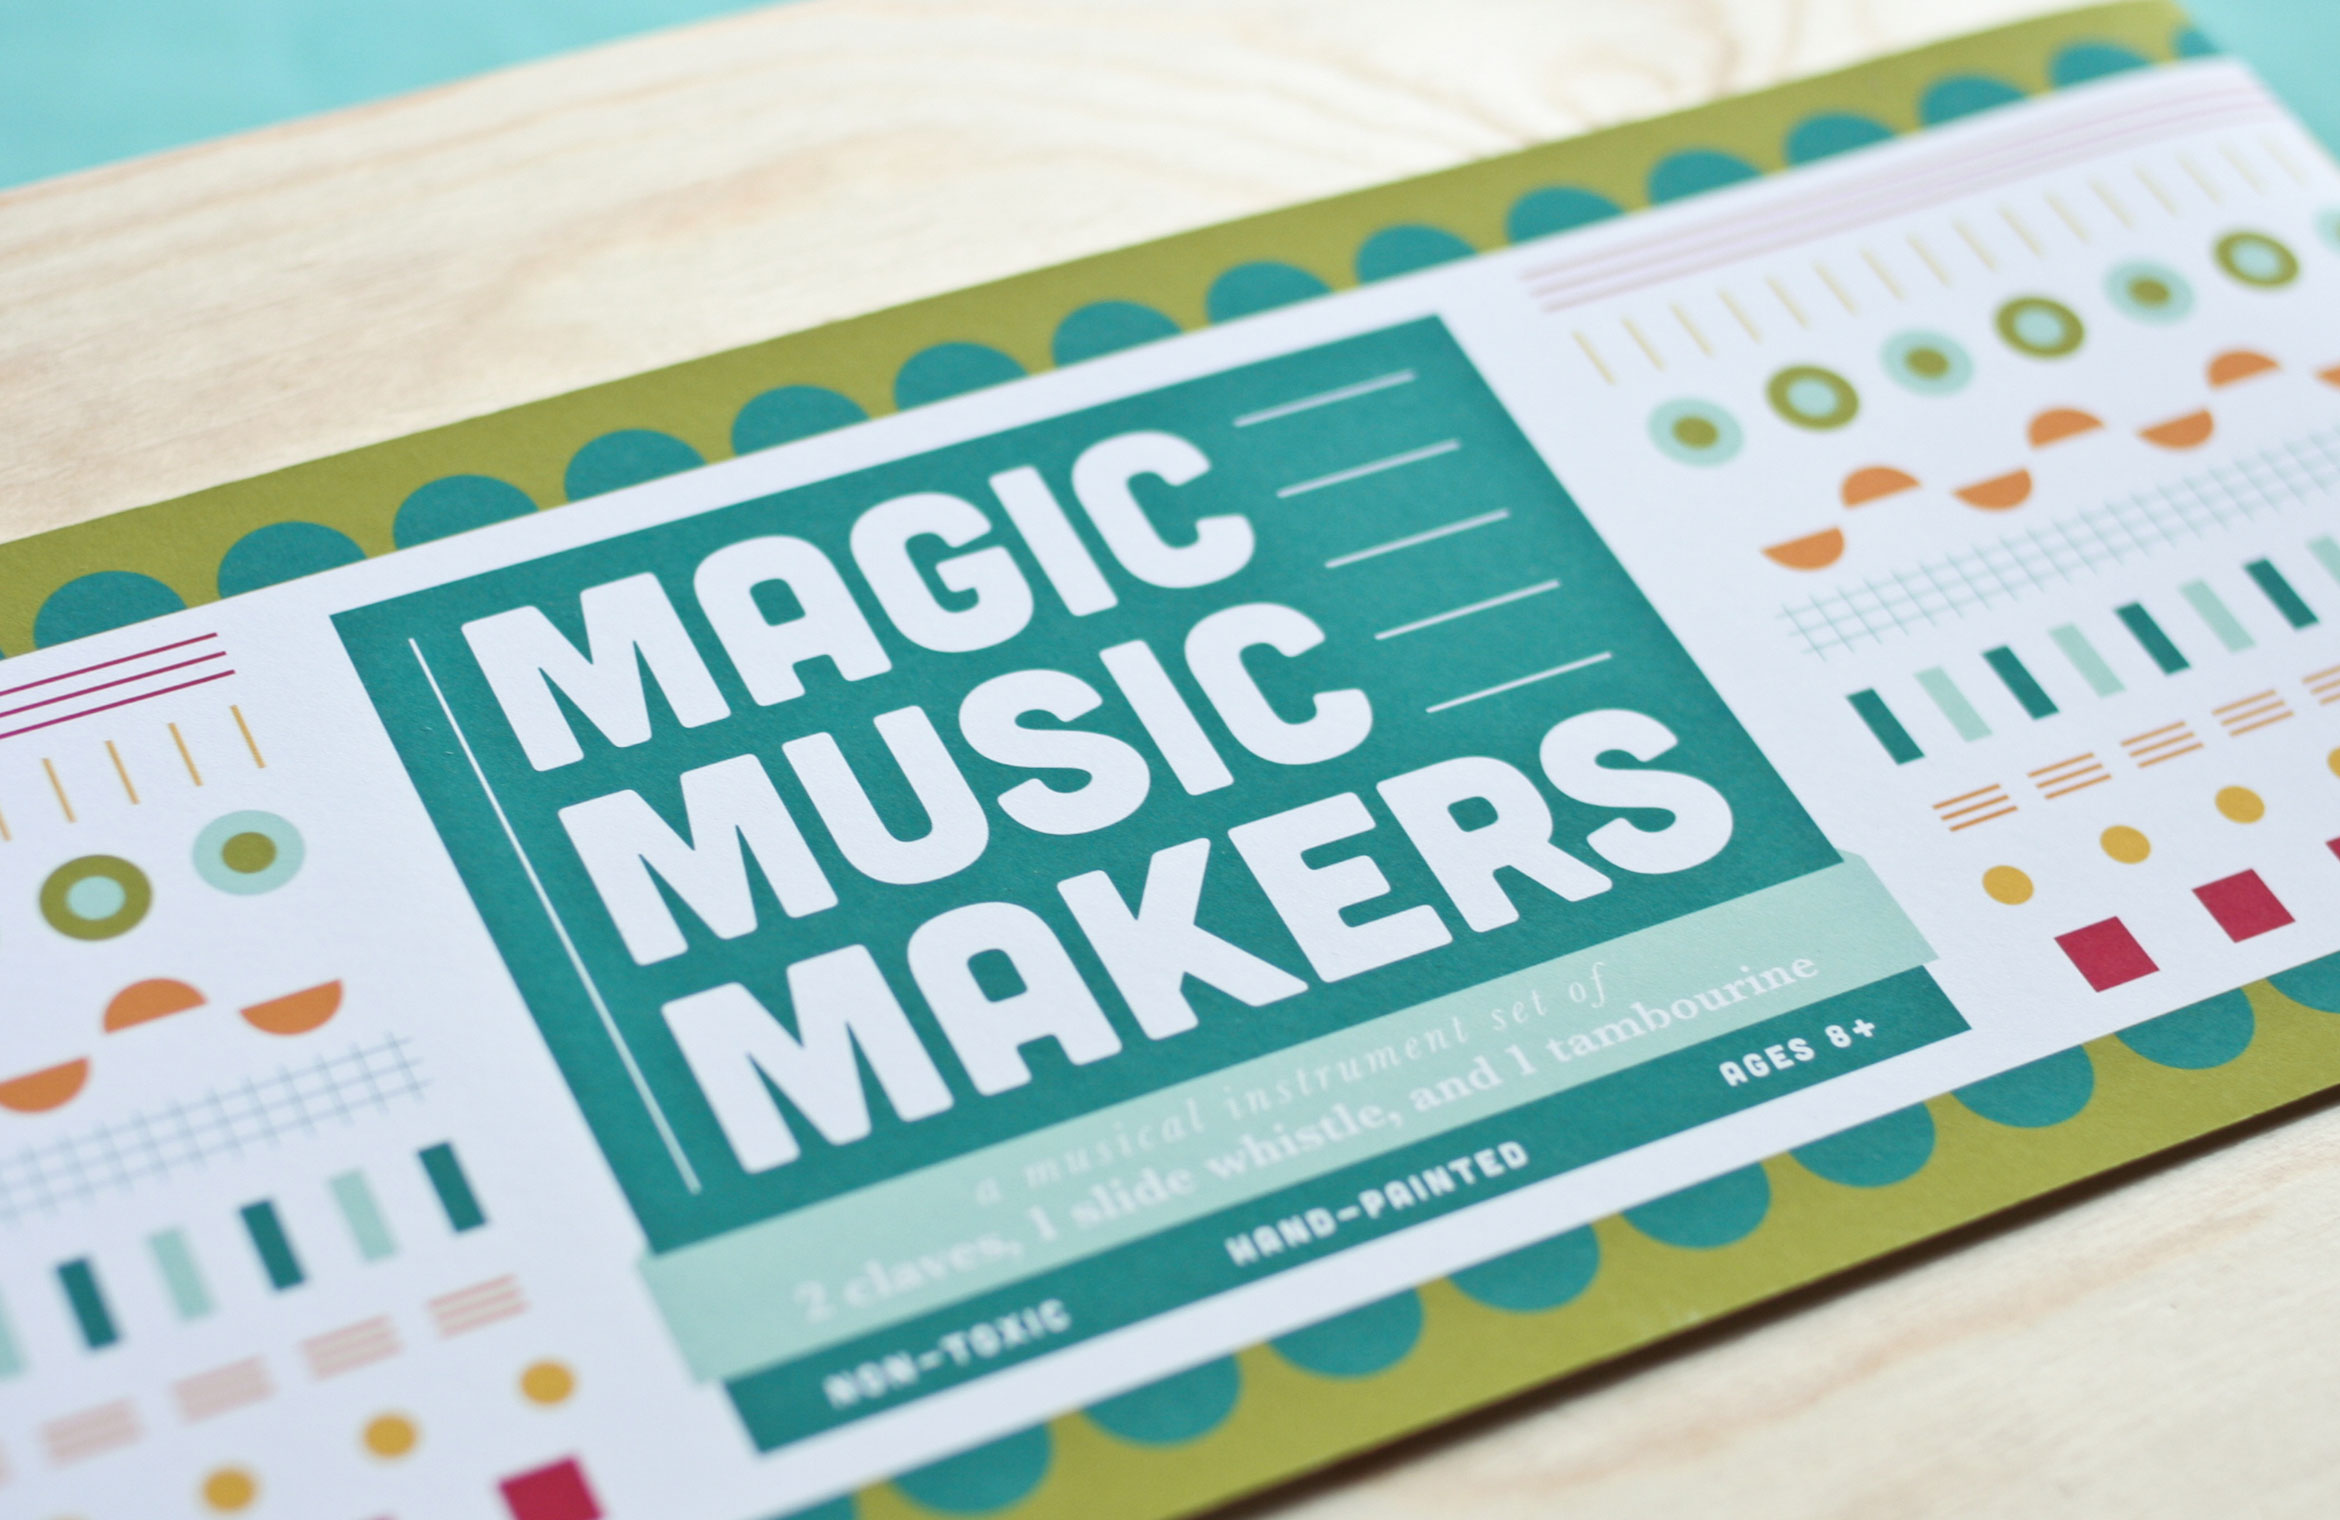 Magic Music Makers